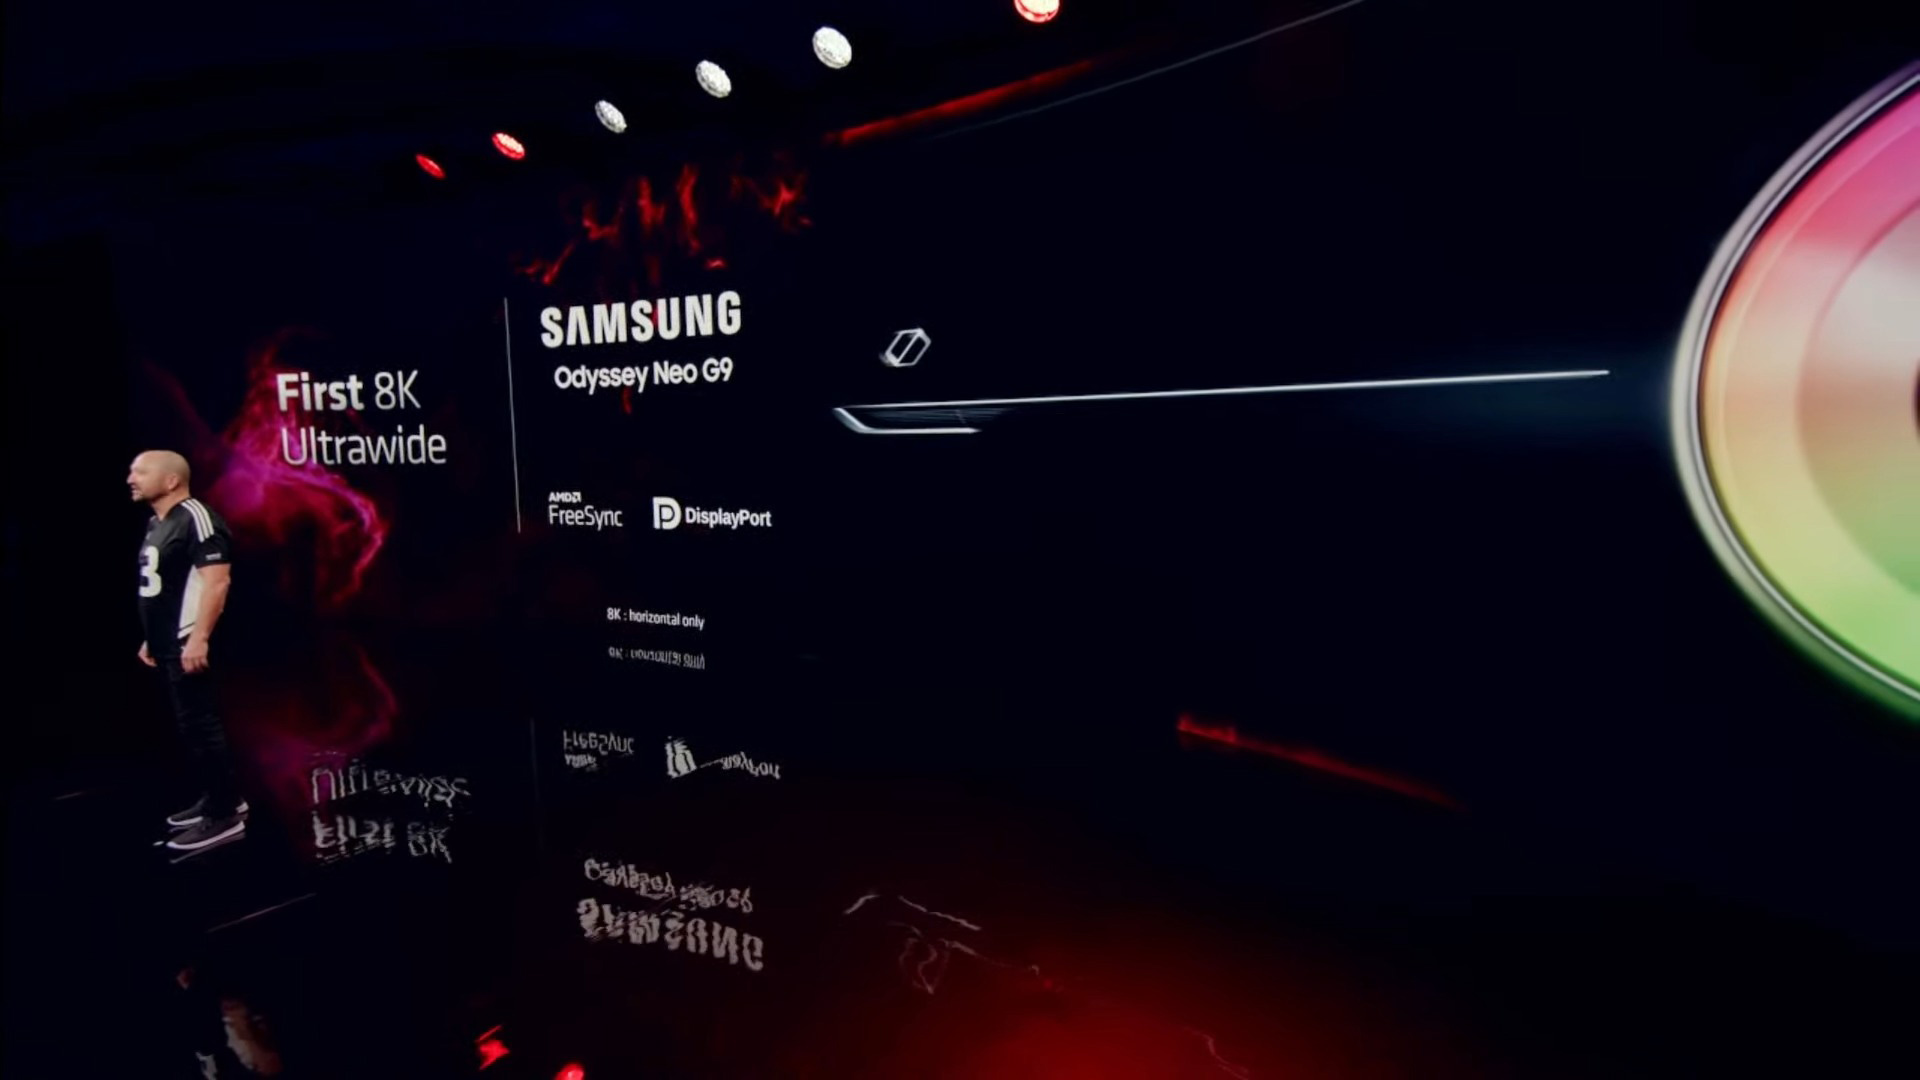 Nadchodzący Odyssey Neo G9 firmy Samsung będzie pierwszym monitorem do gier 8K Ultra HD